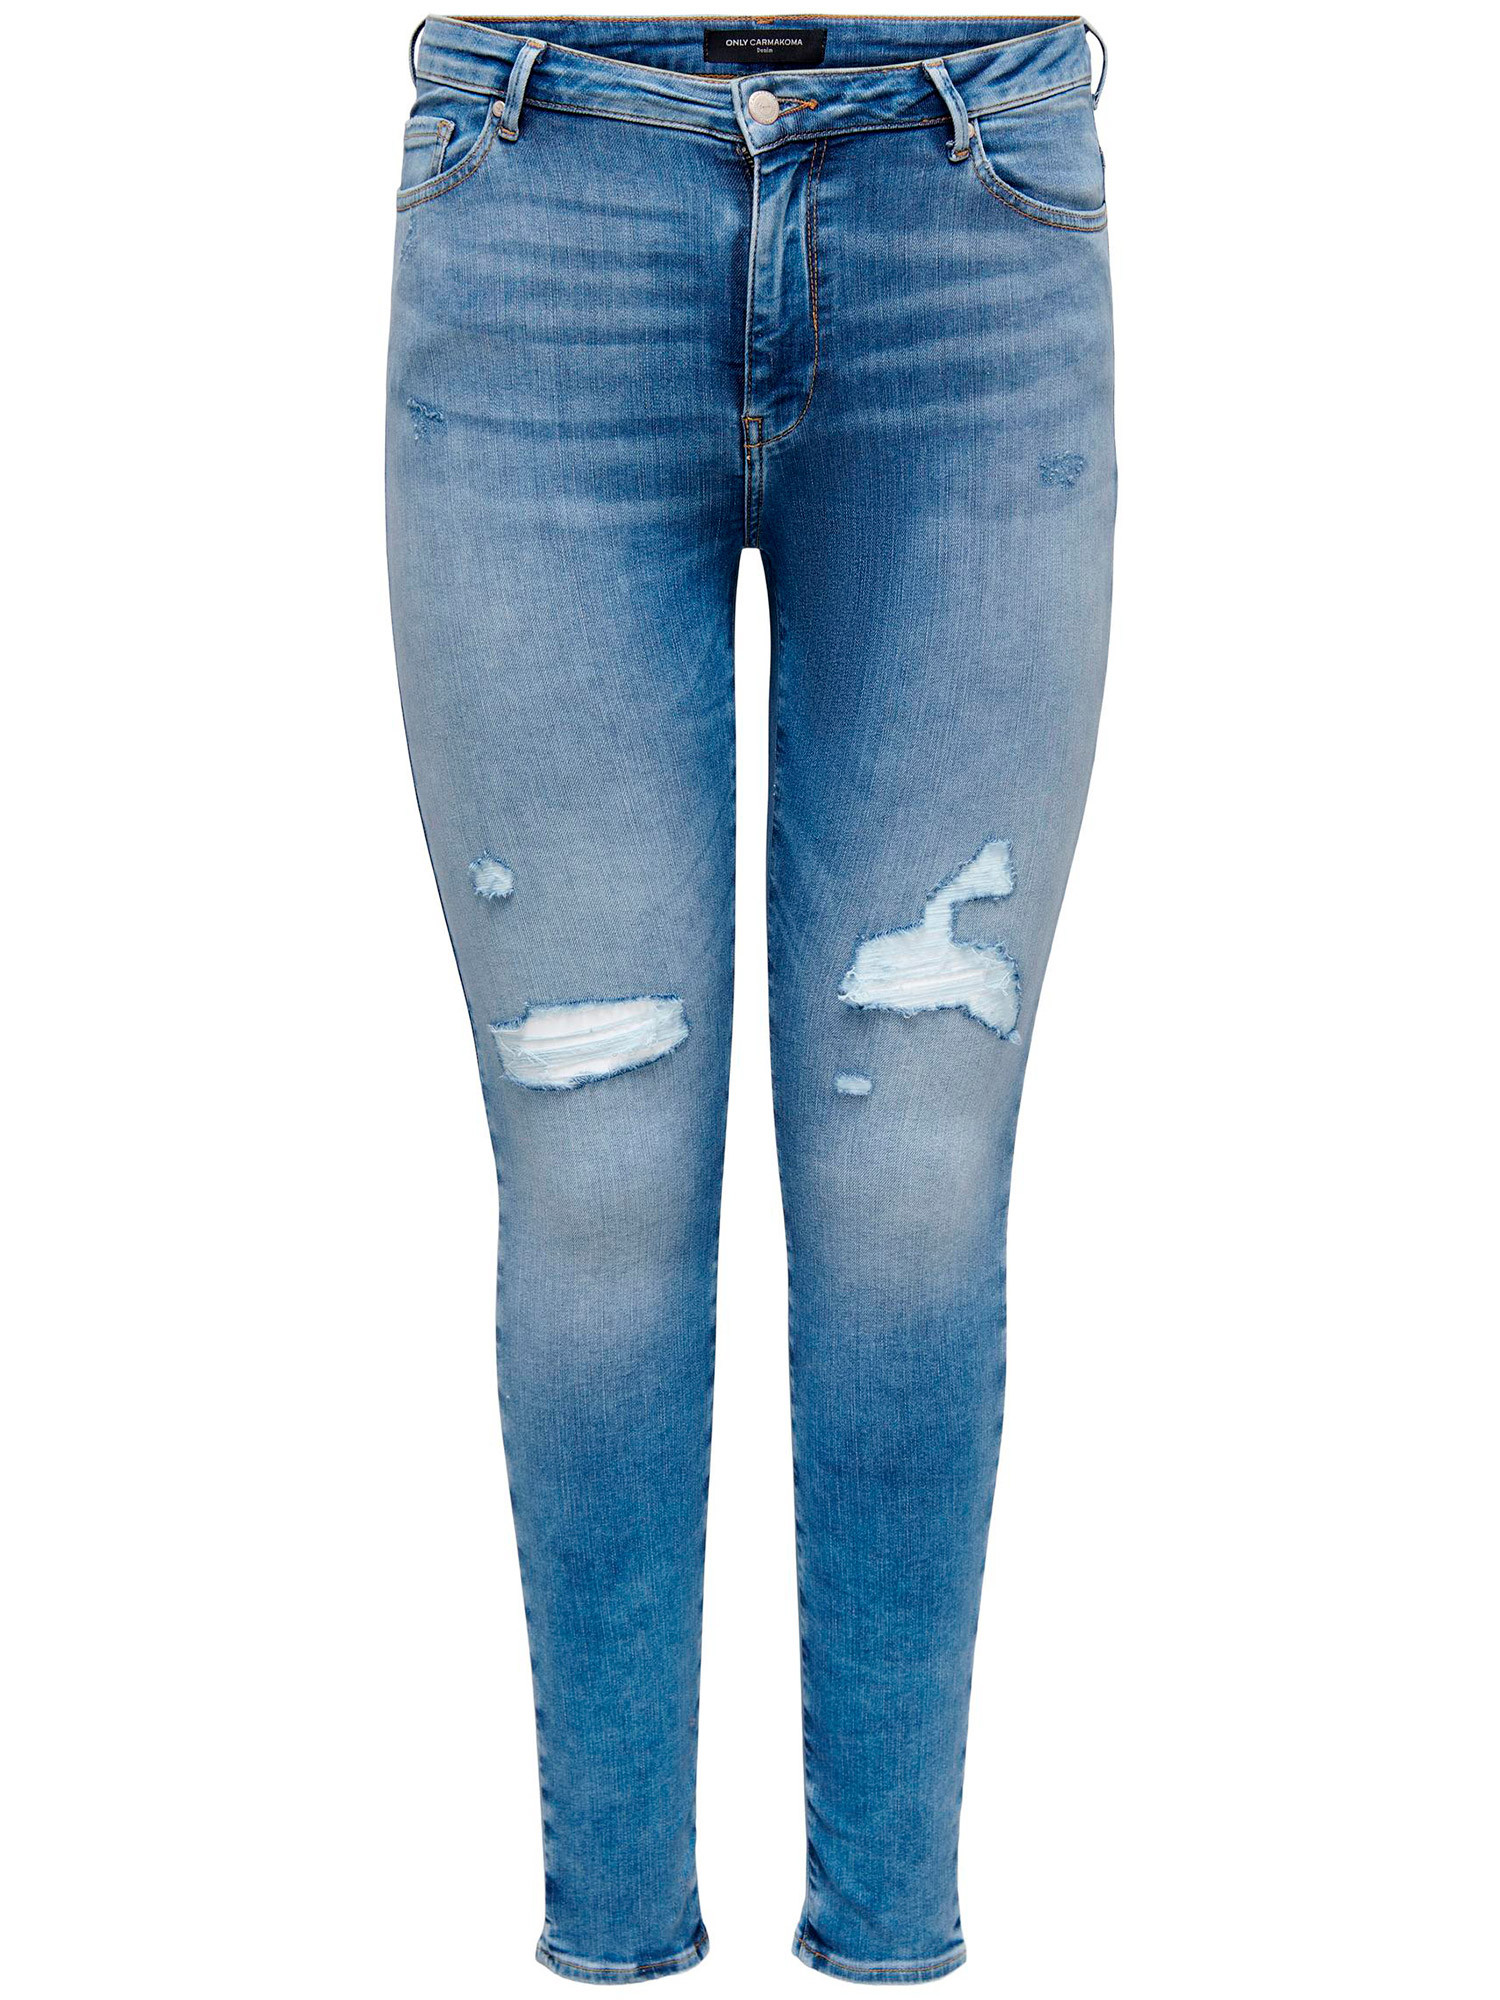 HUBA - Ljusblå jeans i superstretch